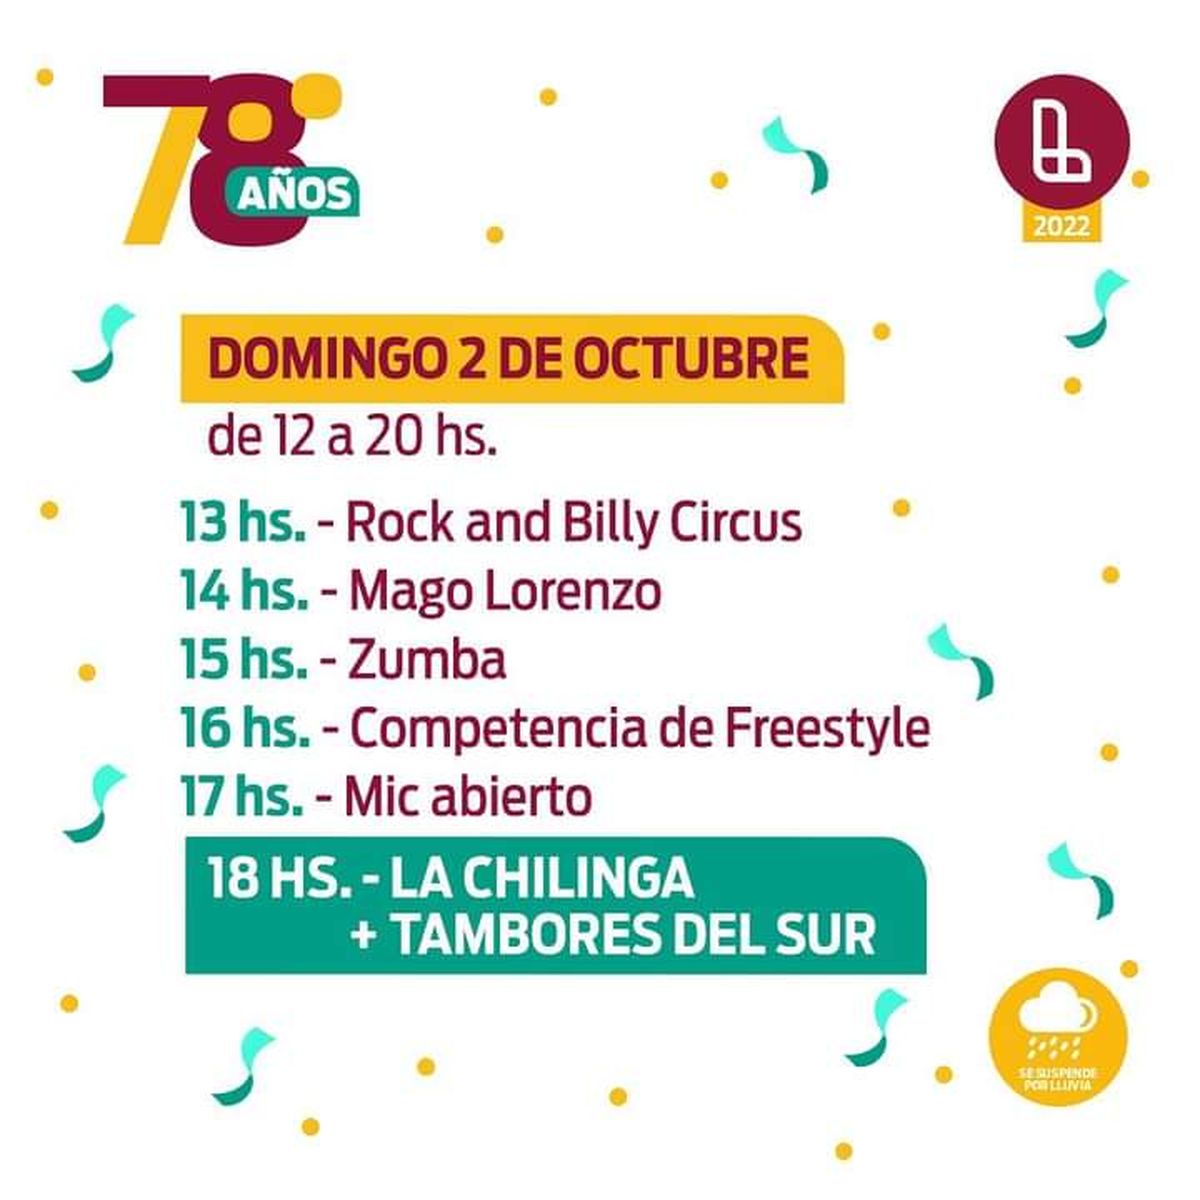 El festival será este sábado y domingo en el Parque Eva Perón.